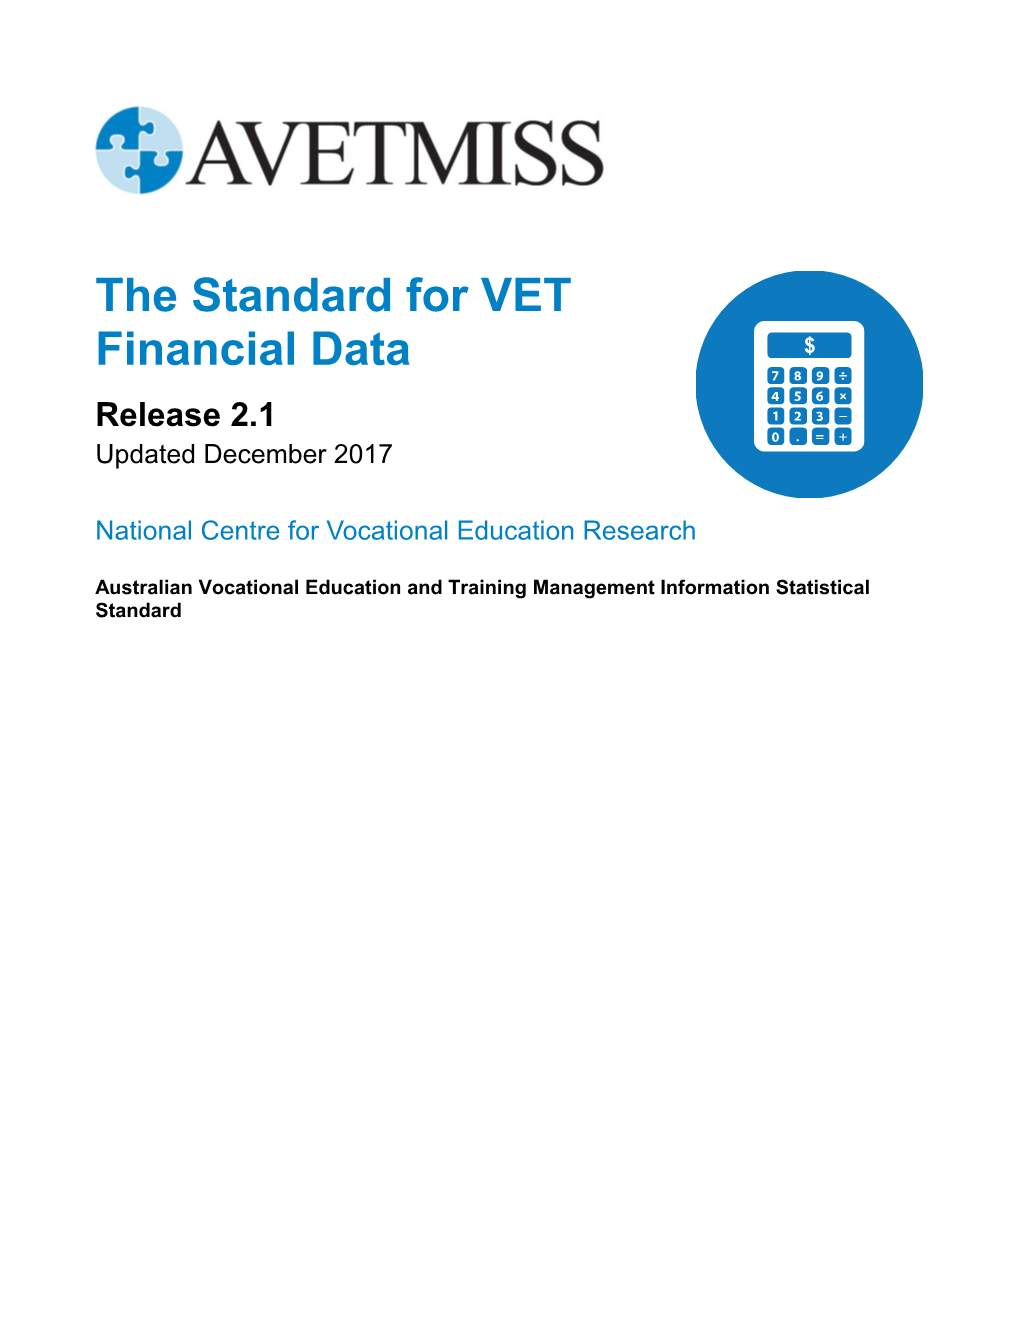 AVETMISS: the Standard for VET Financial Data 2.1